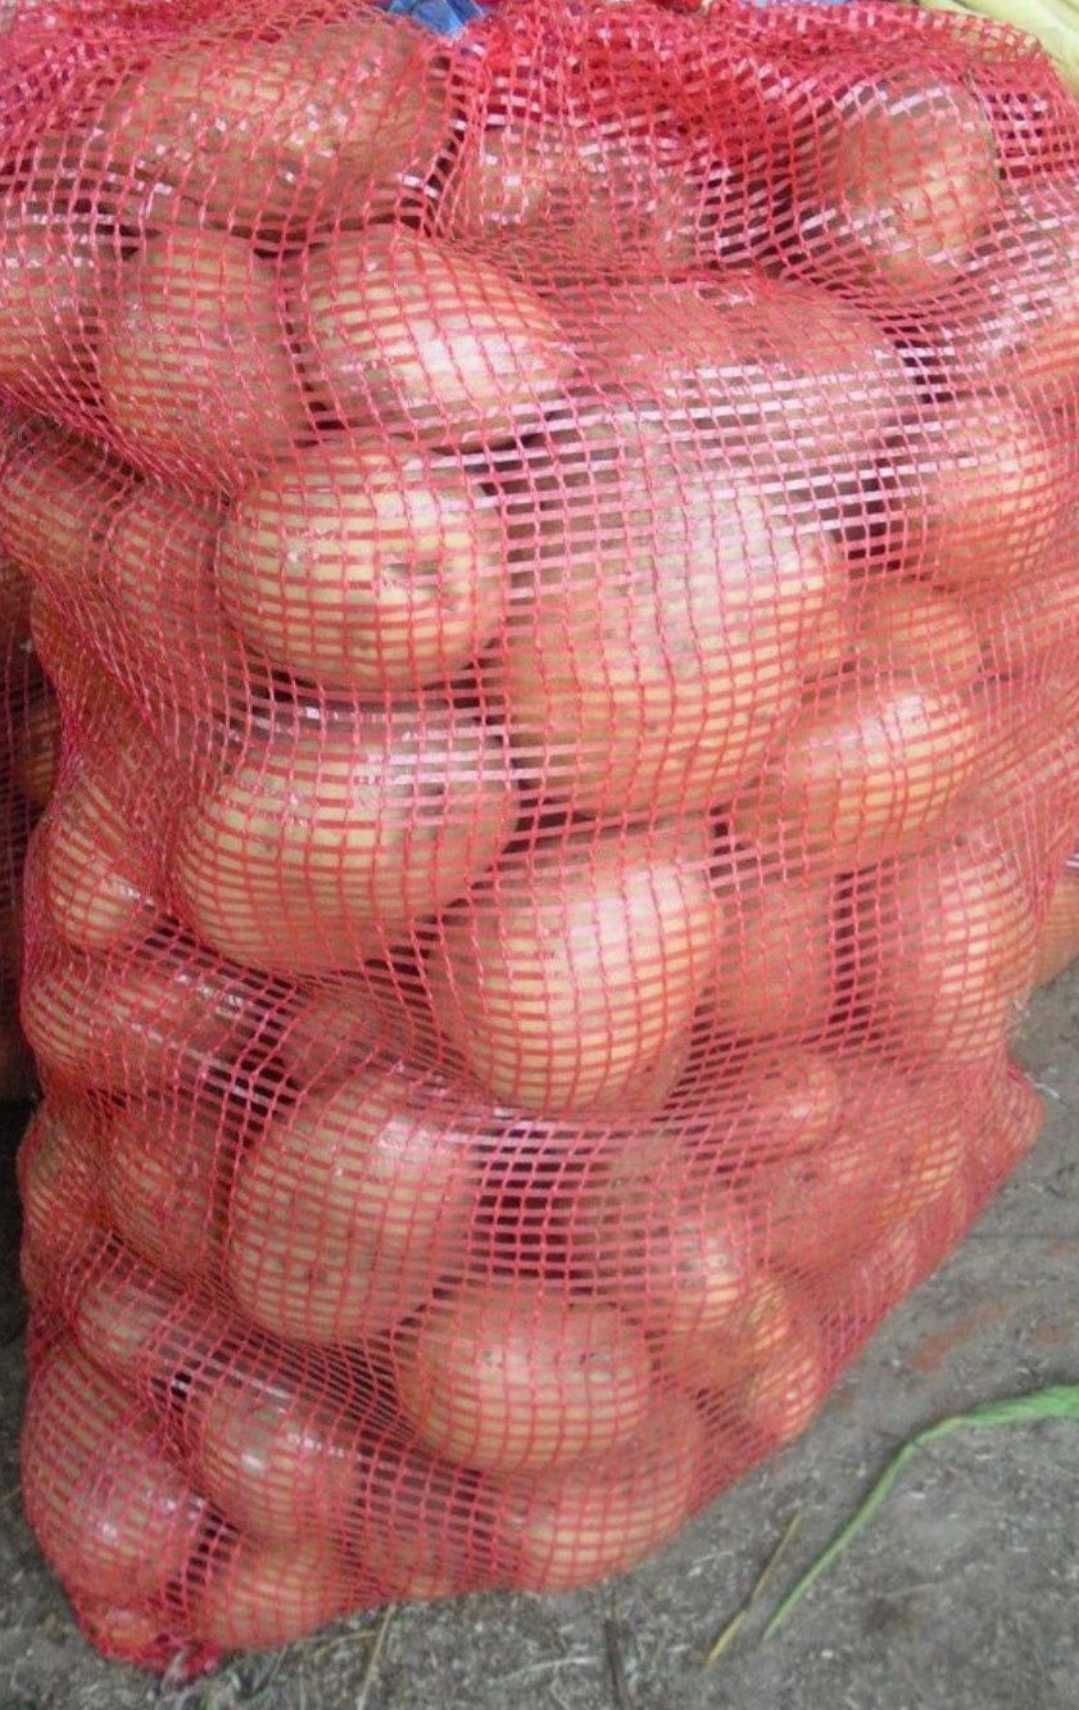 Batatas Vermelhas